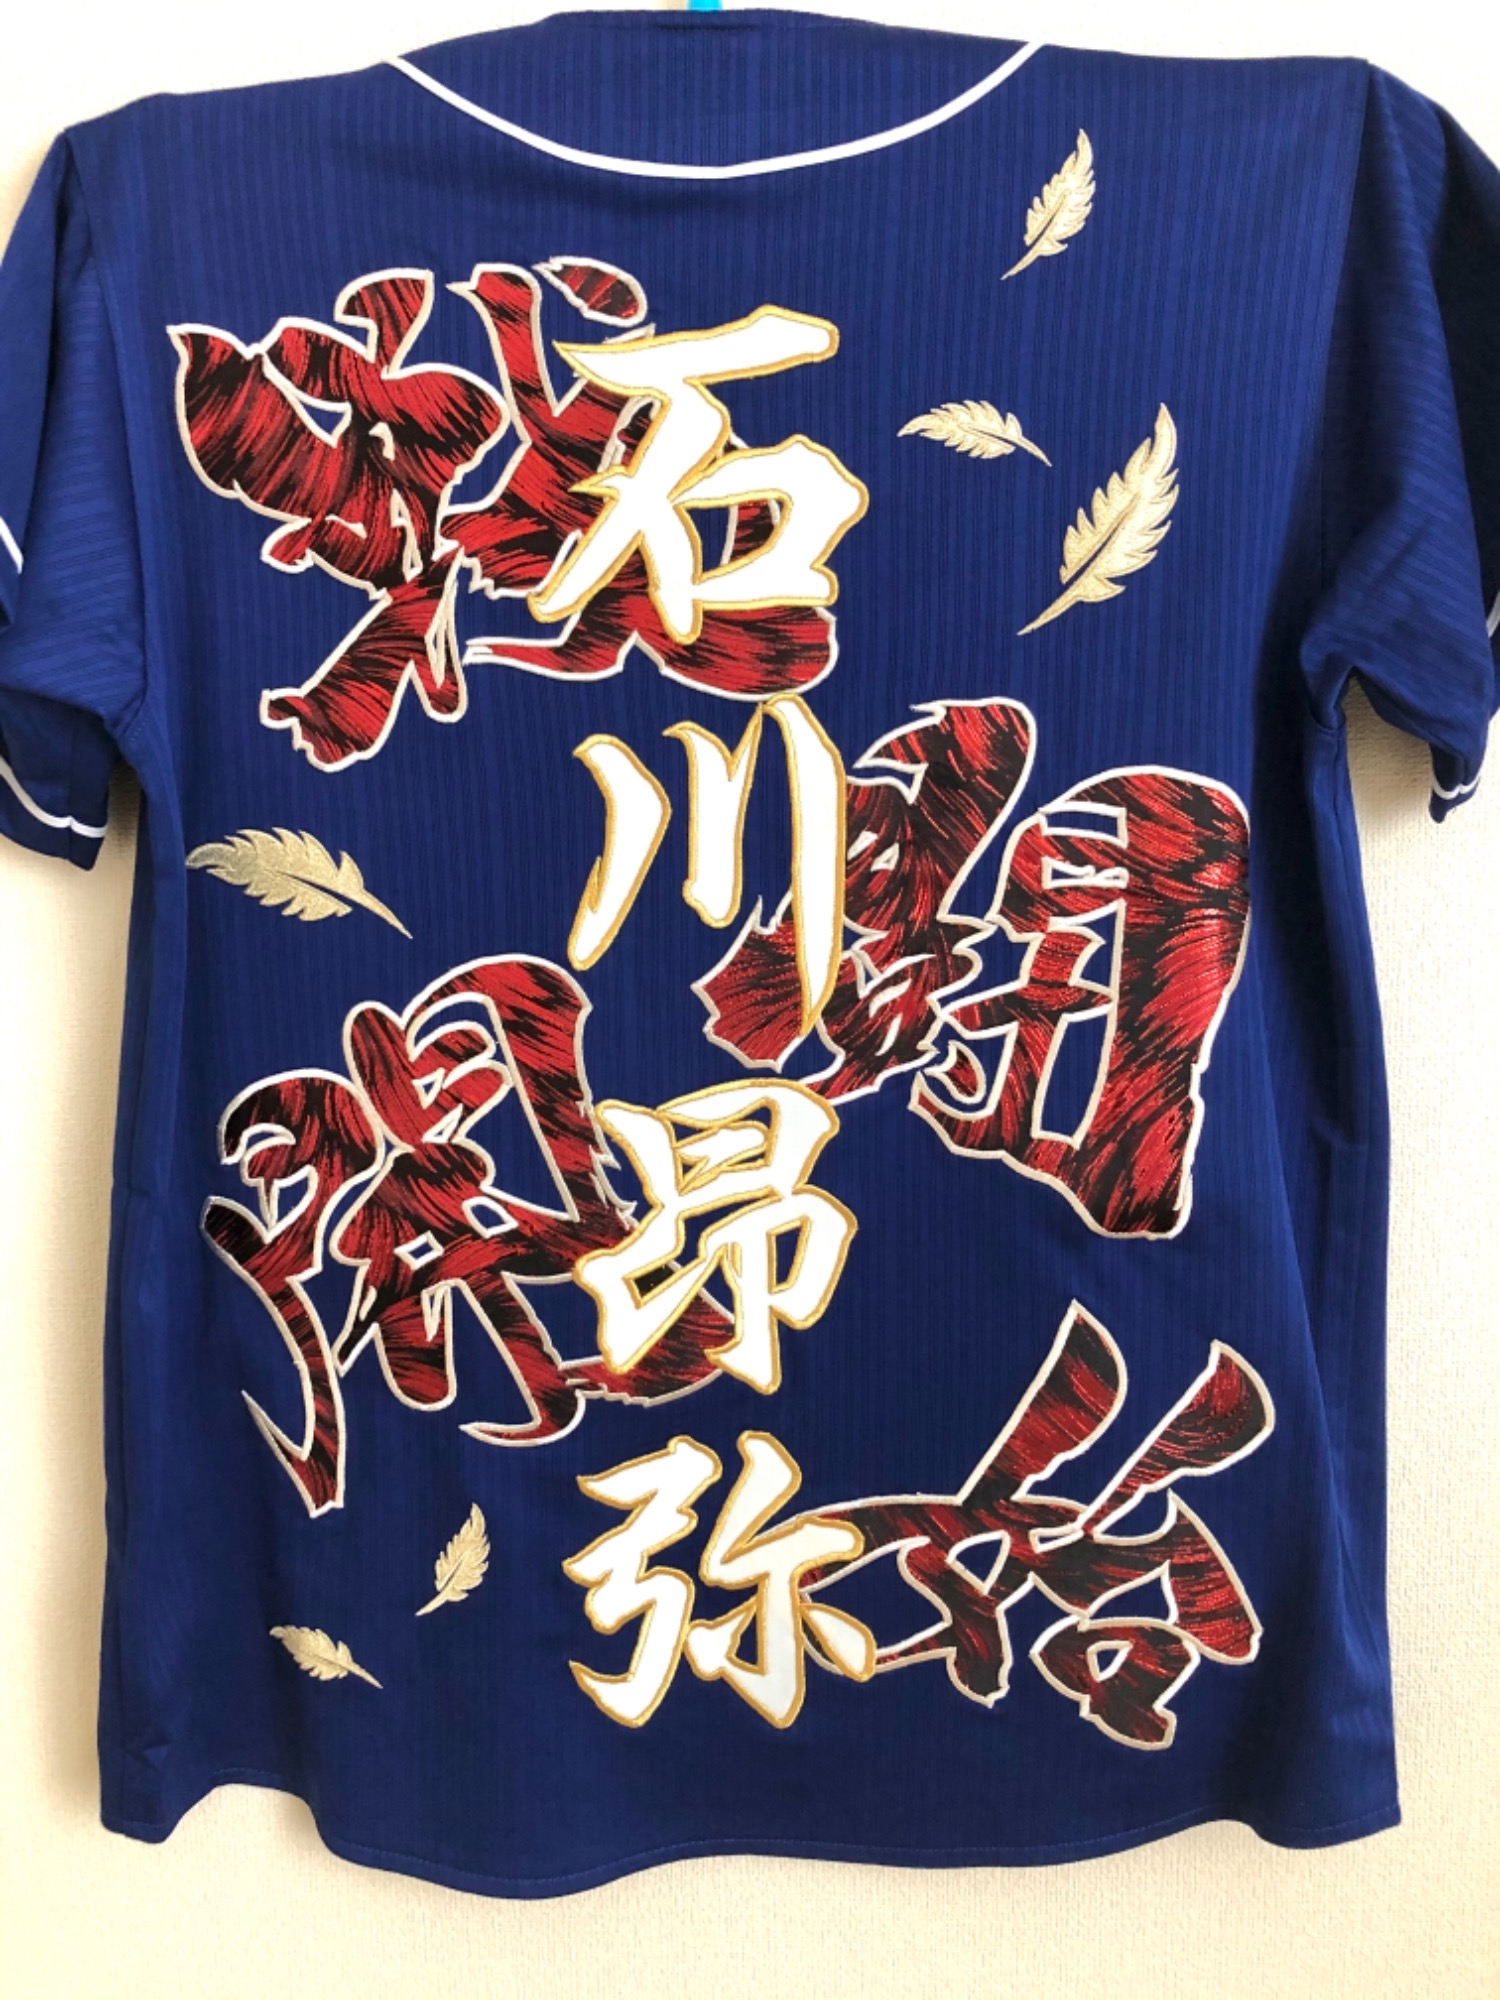 中日ドラゴンズビジターユニフォームへの刺繍『石川昂弥選手 